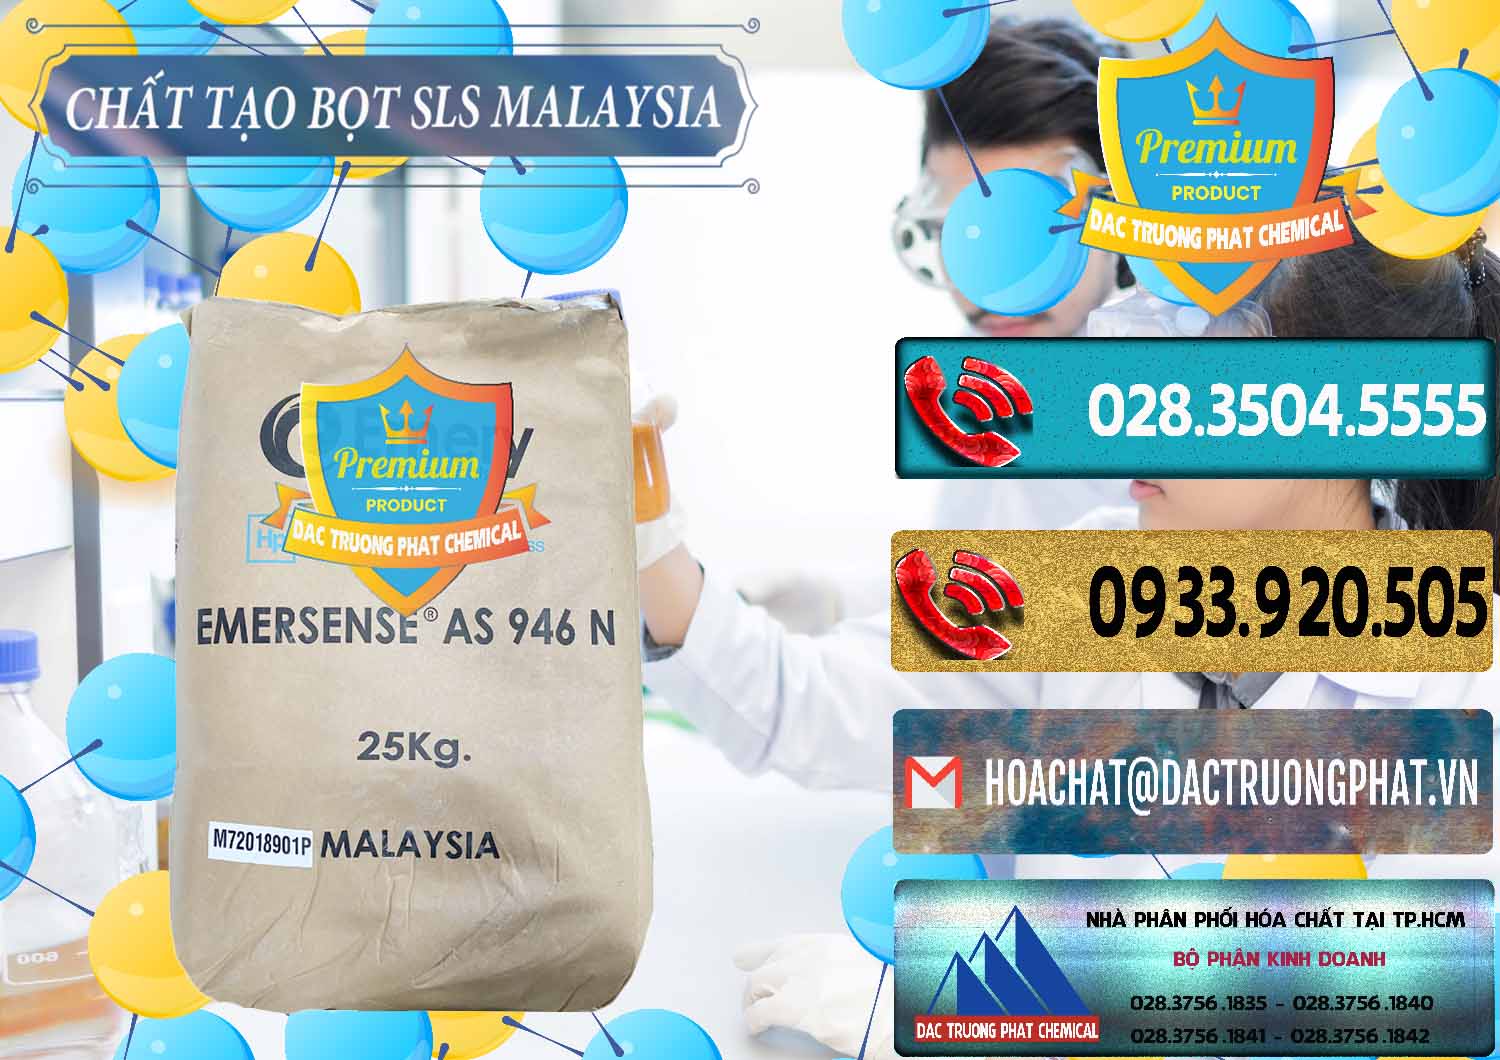 Cty chuyên bán và cung cấp Chất Tạo Bọt SLS Emery - Emersense AS 946N Mã Lai Malaysia - 0423 - Nơi phân phối & cung cấp hóa chất tại TP.HCM - hoachatdetnhuom.com